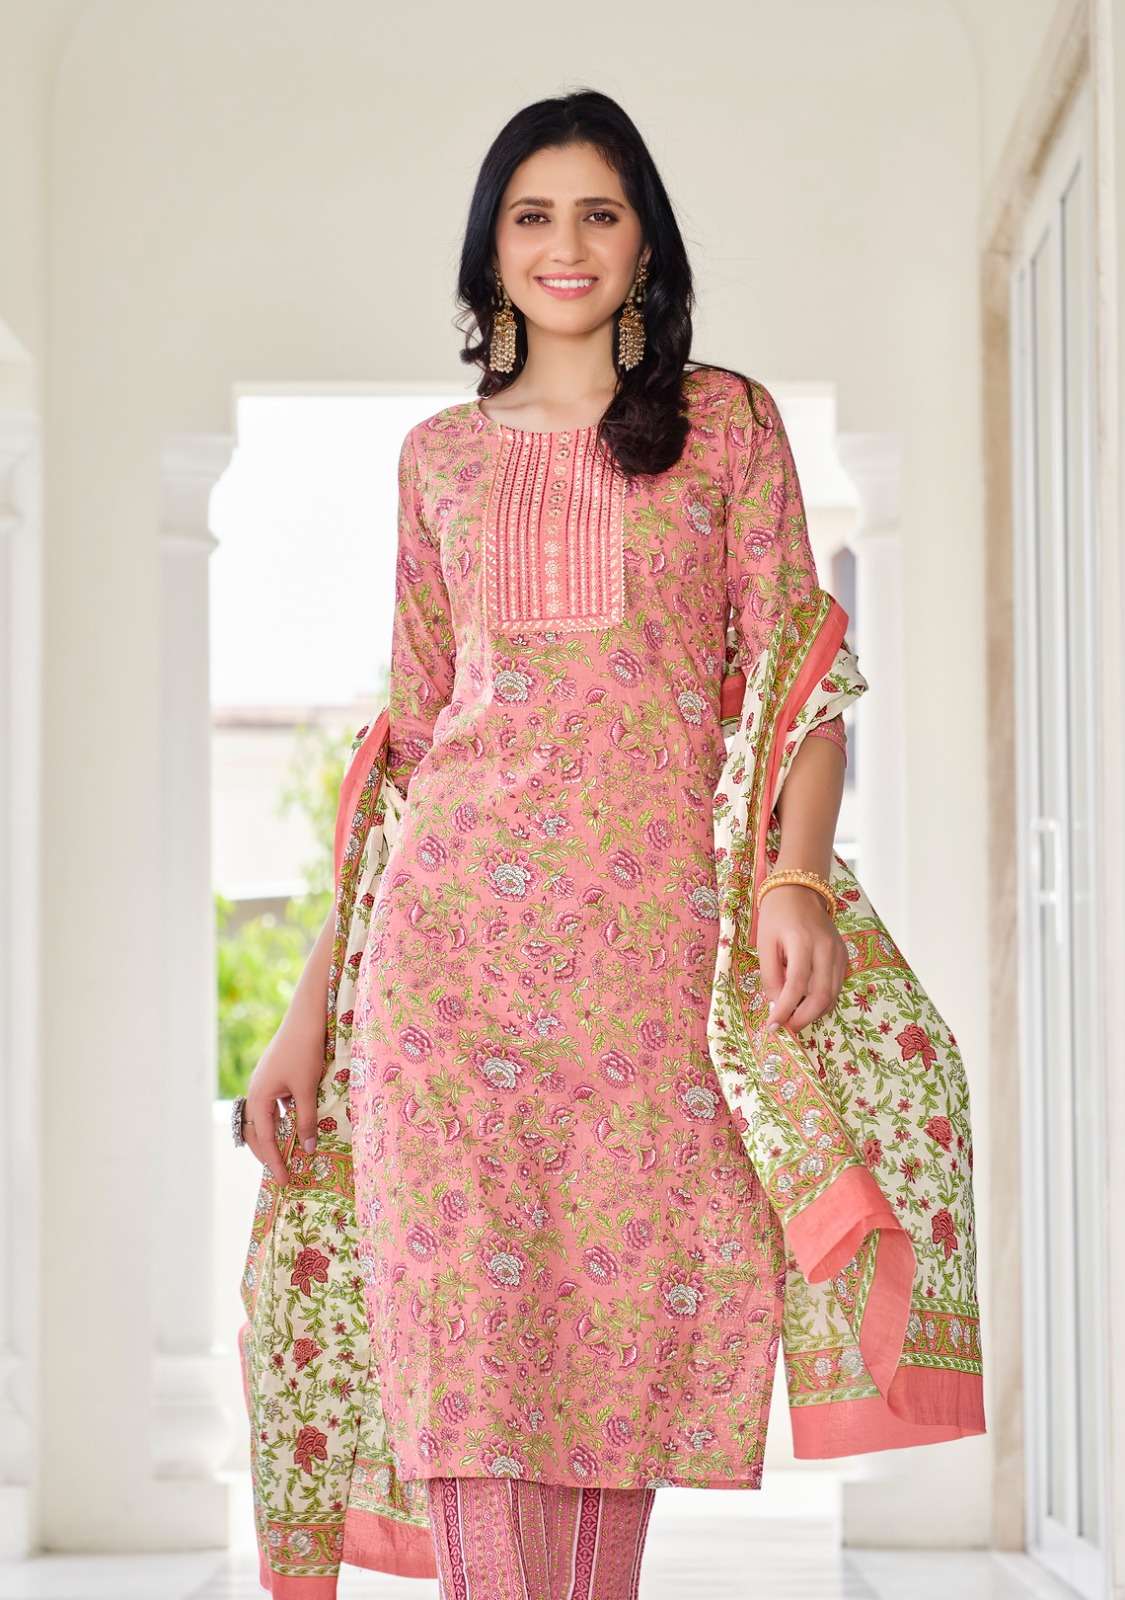 radhika lifestyle cotton kudhi vol 5 5001-5006 series cotton stich suits online best price surat 